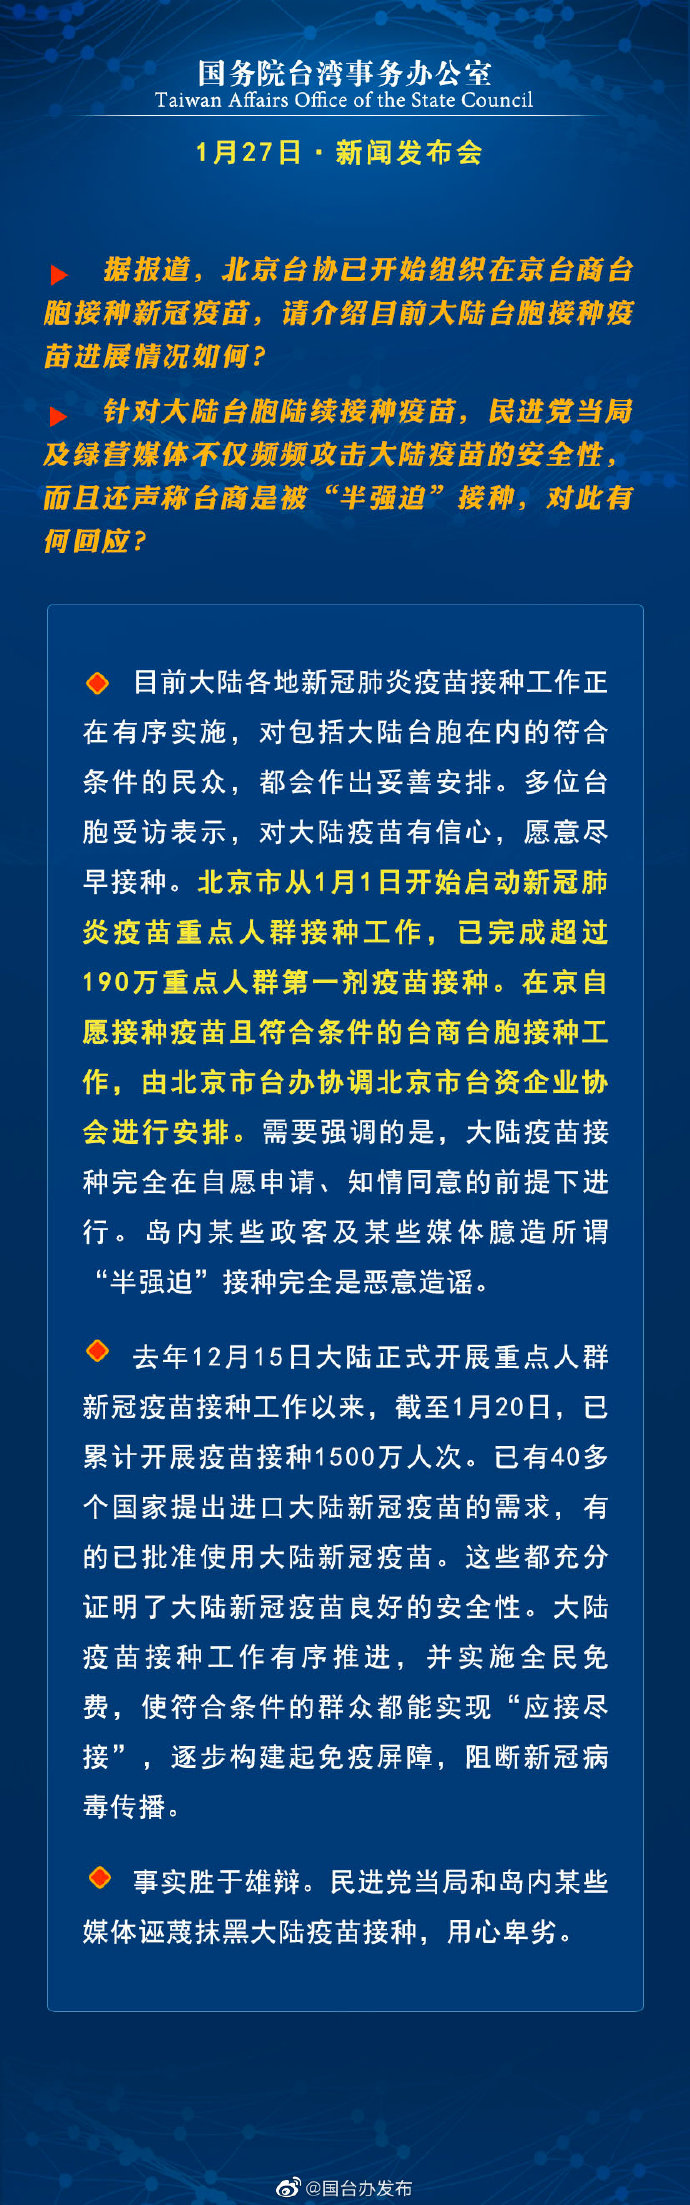 国务院台湾事务办公室1月13日·新闻发布会_fororder_a5